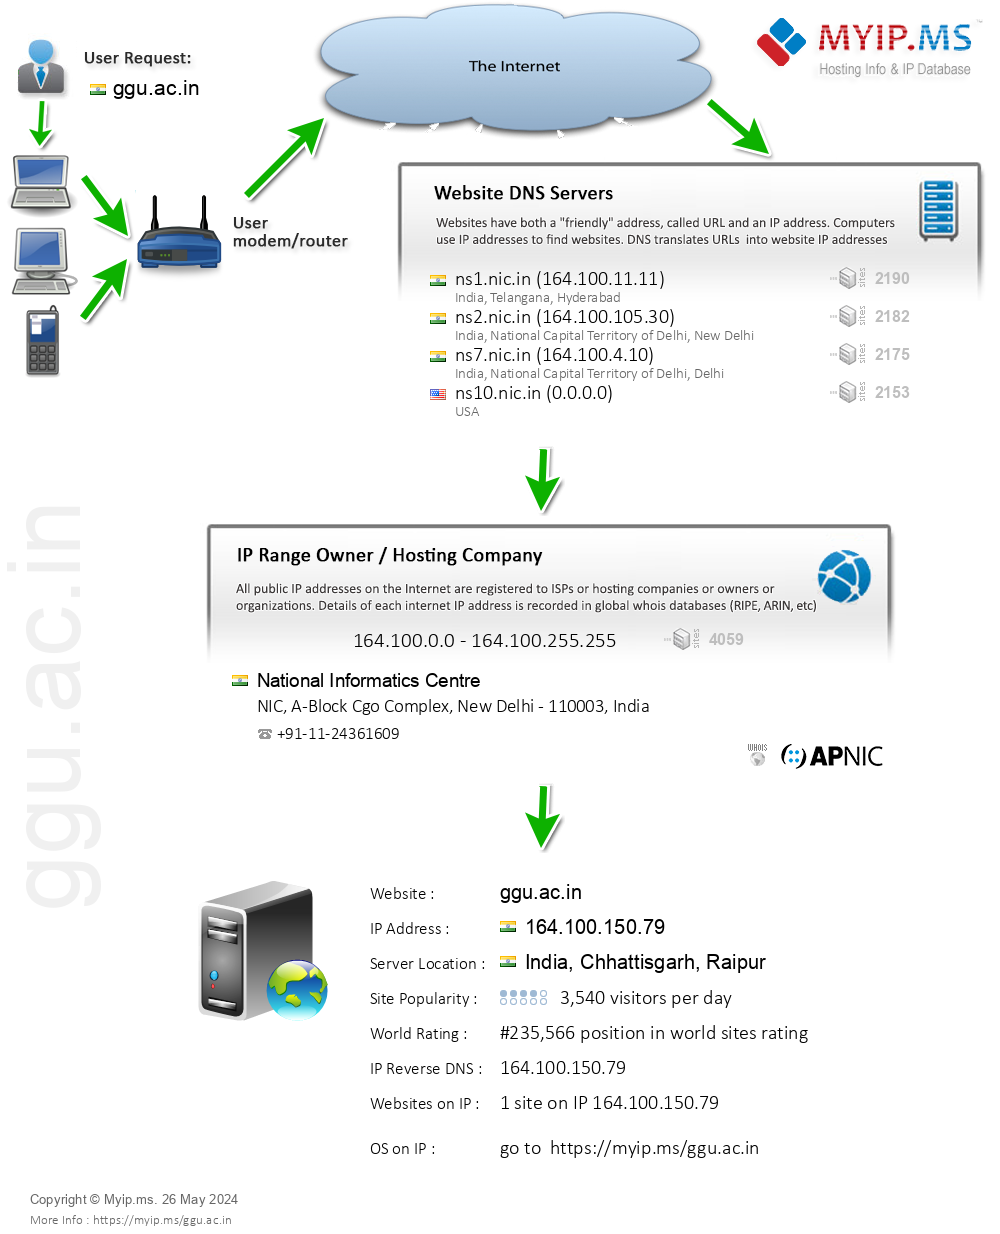 Ggu.ac.in - Website Hosting Visual IP Diagram